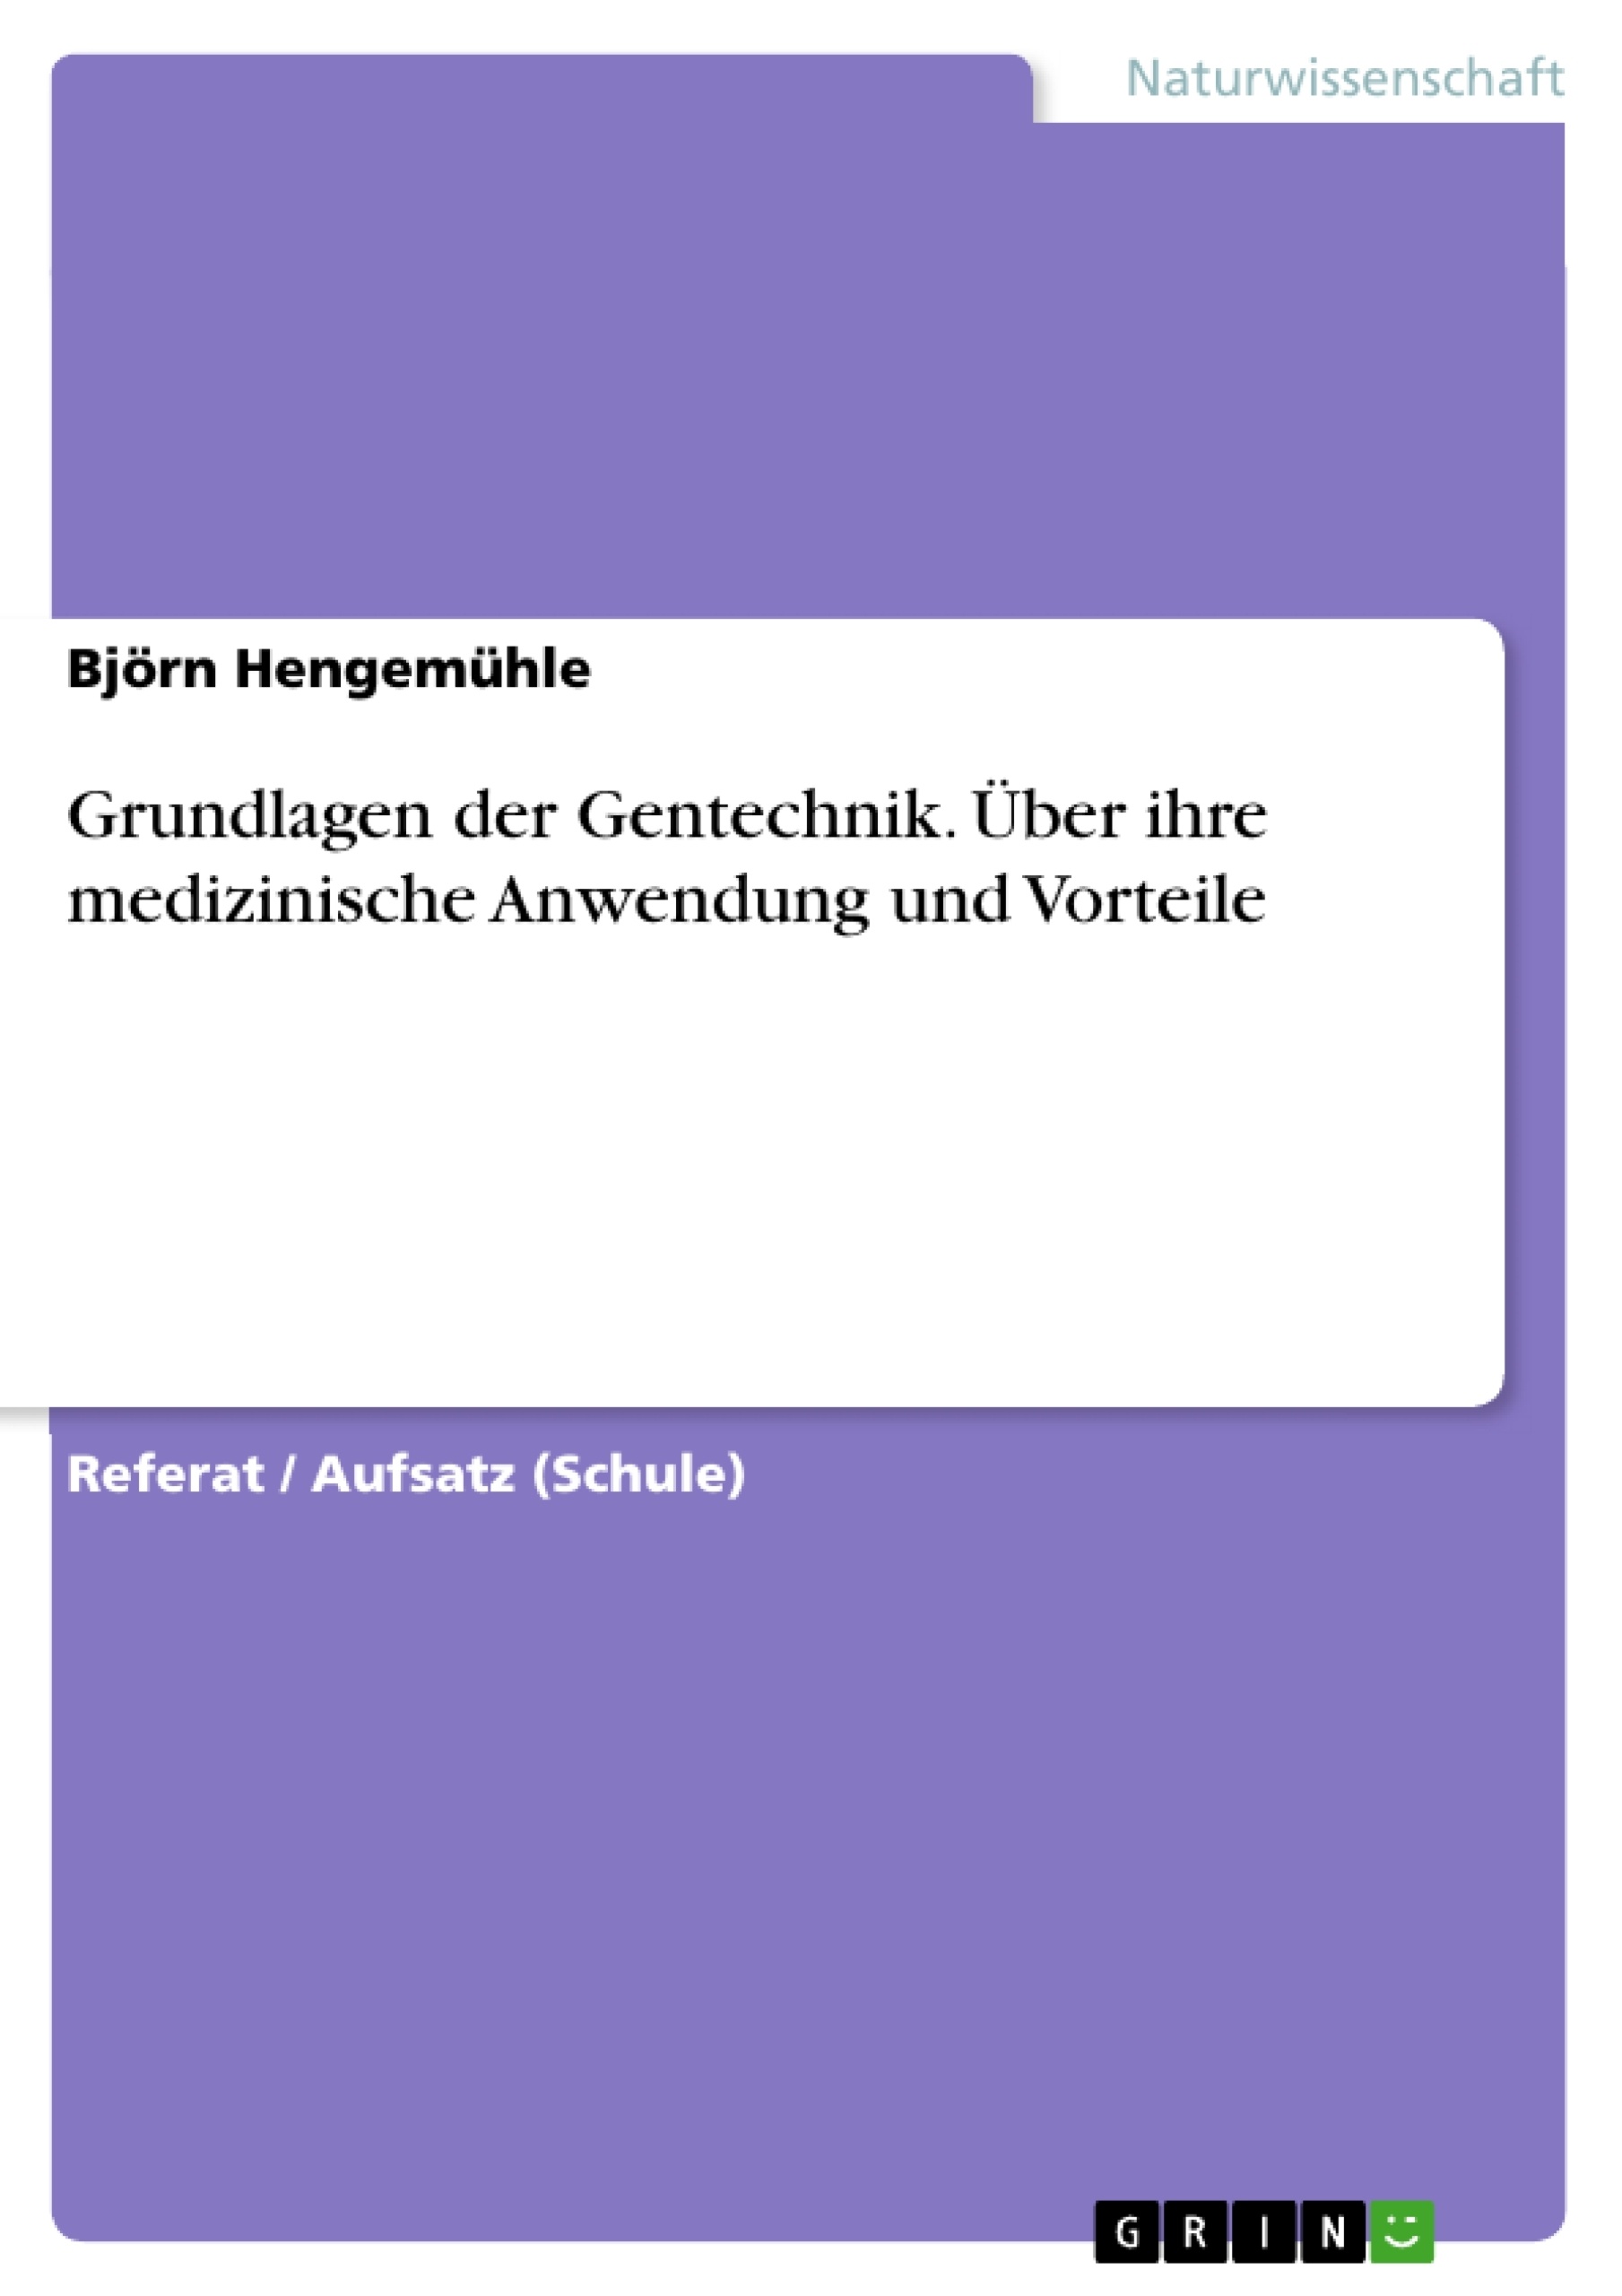 Title: Grundlagen der Gentechnik. Über ihre medizinische Anwendung und Vorteile